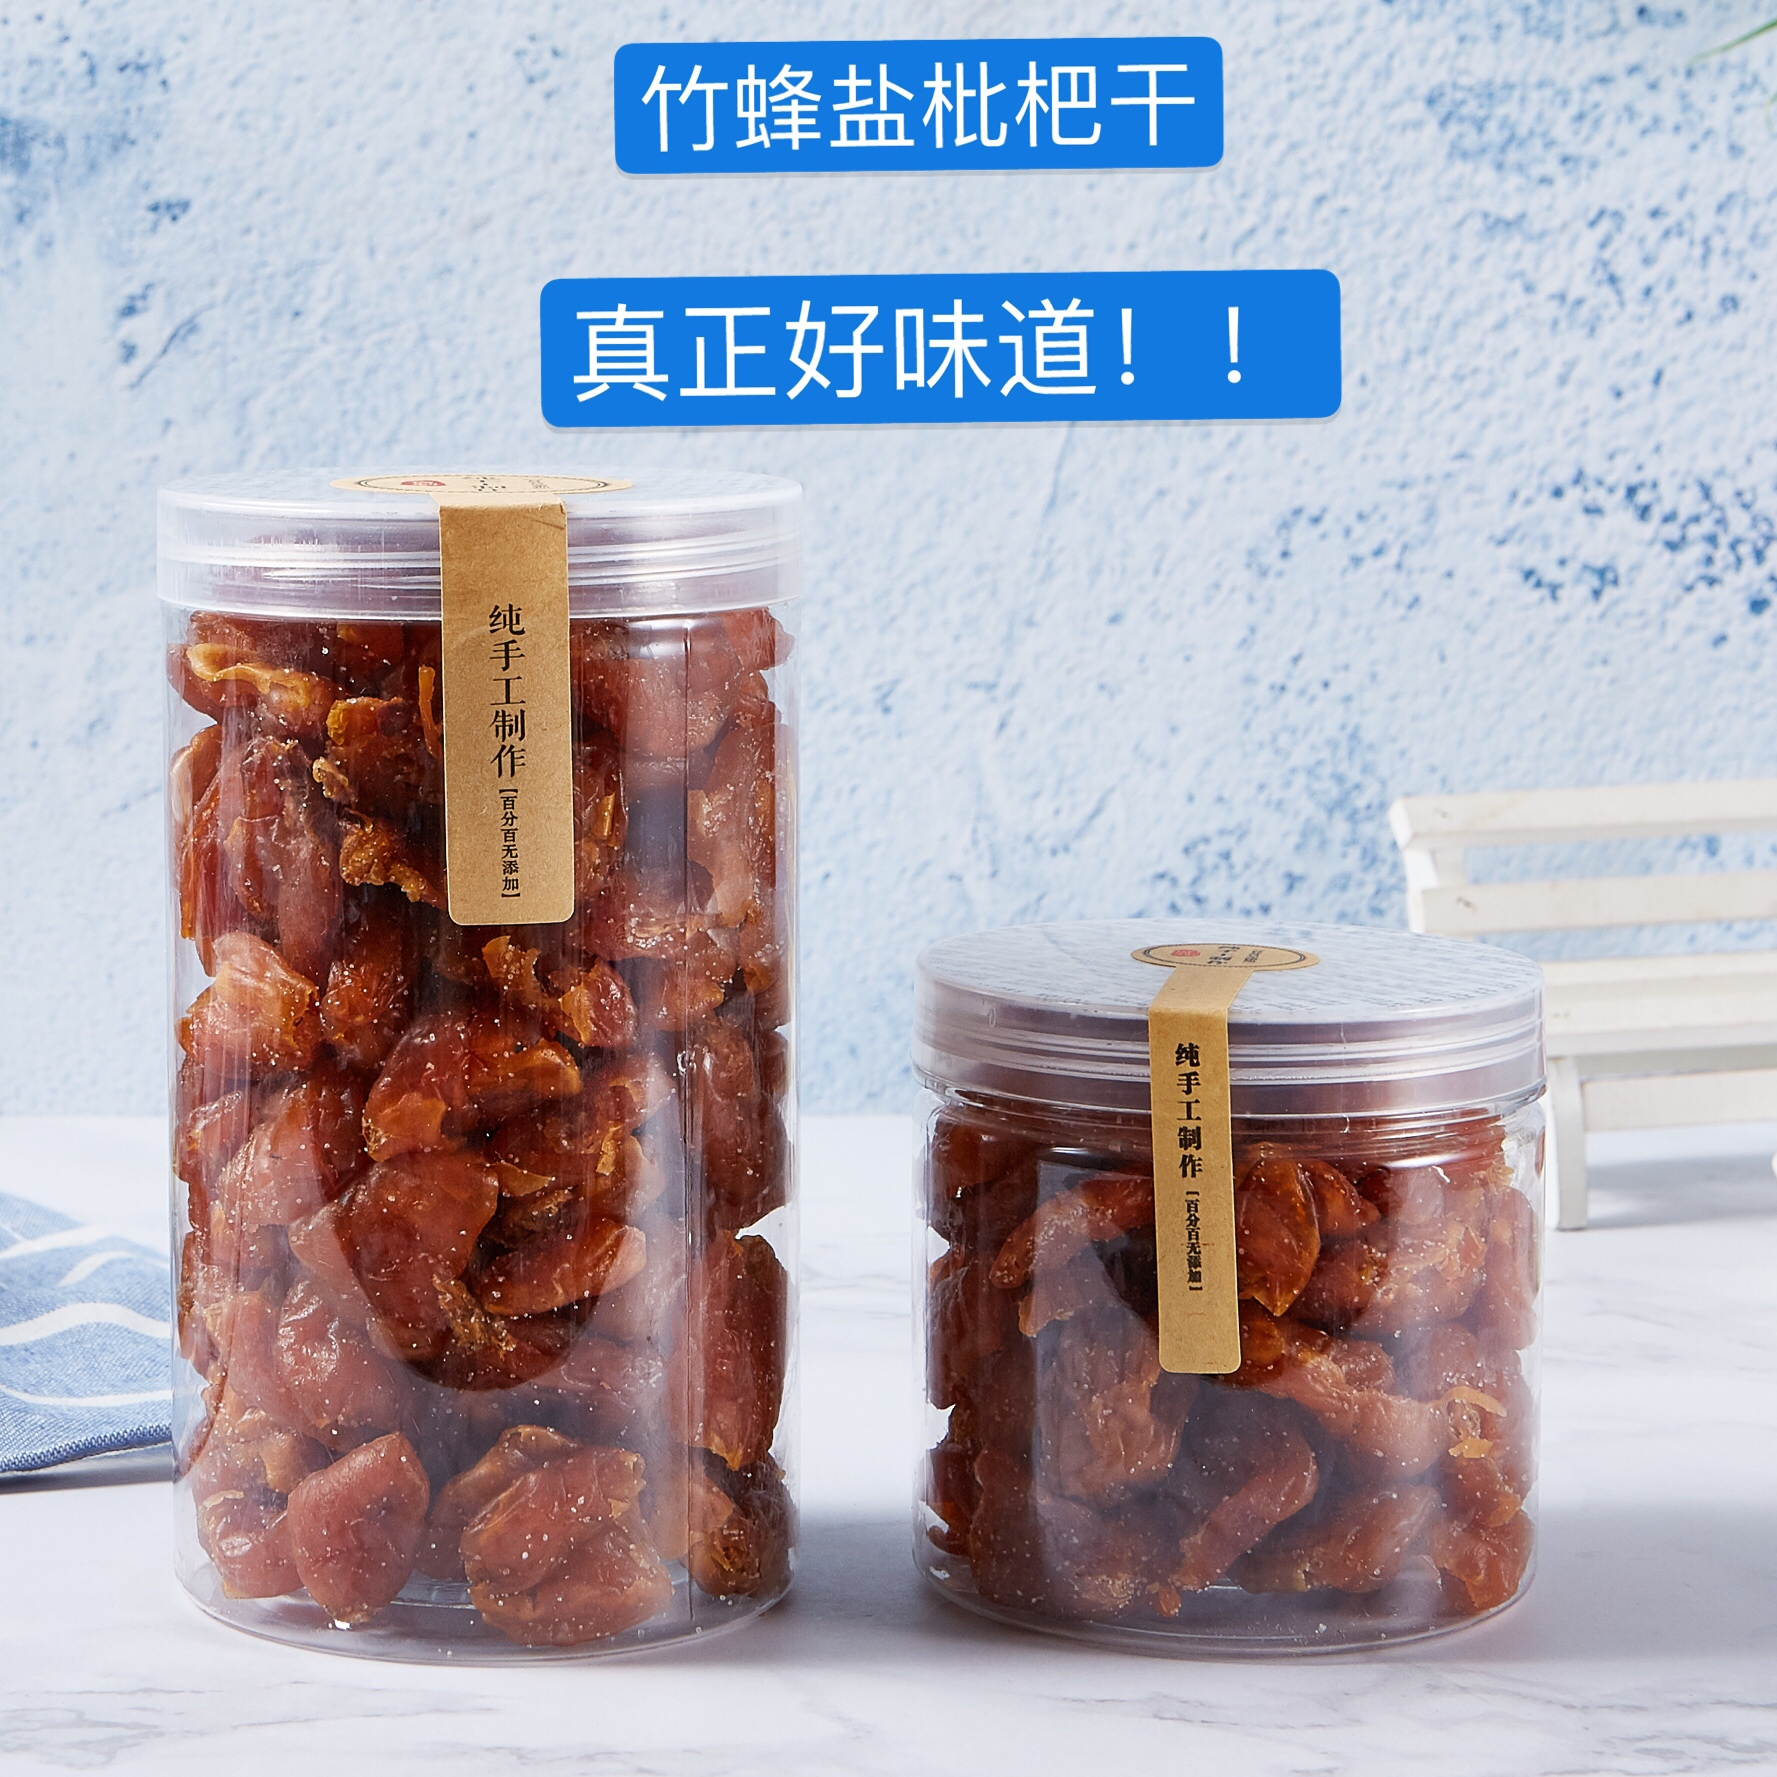 广东特产竹蜂盐枇杷干罐装纯手工制作无添加剂办公室健康零食